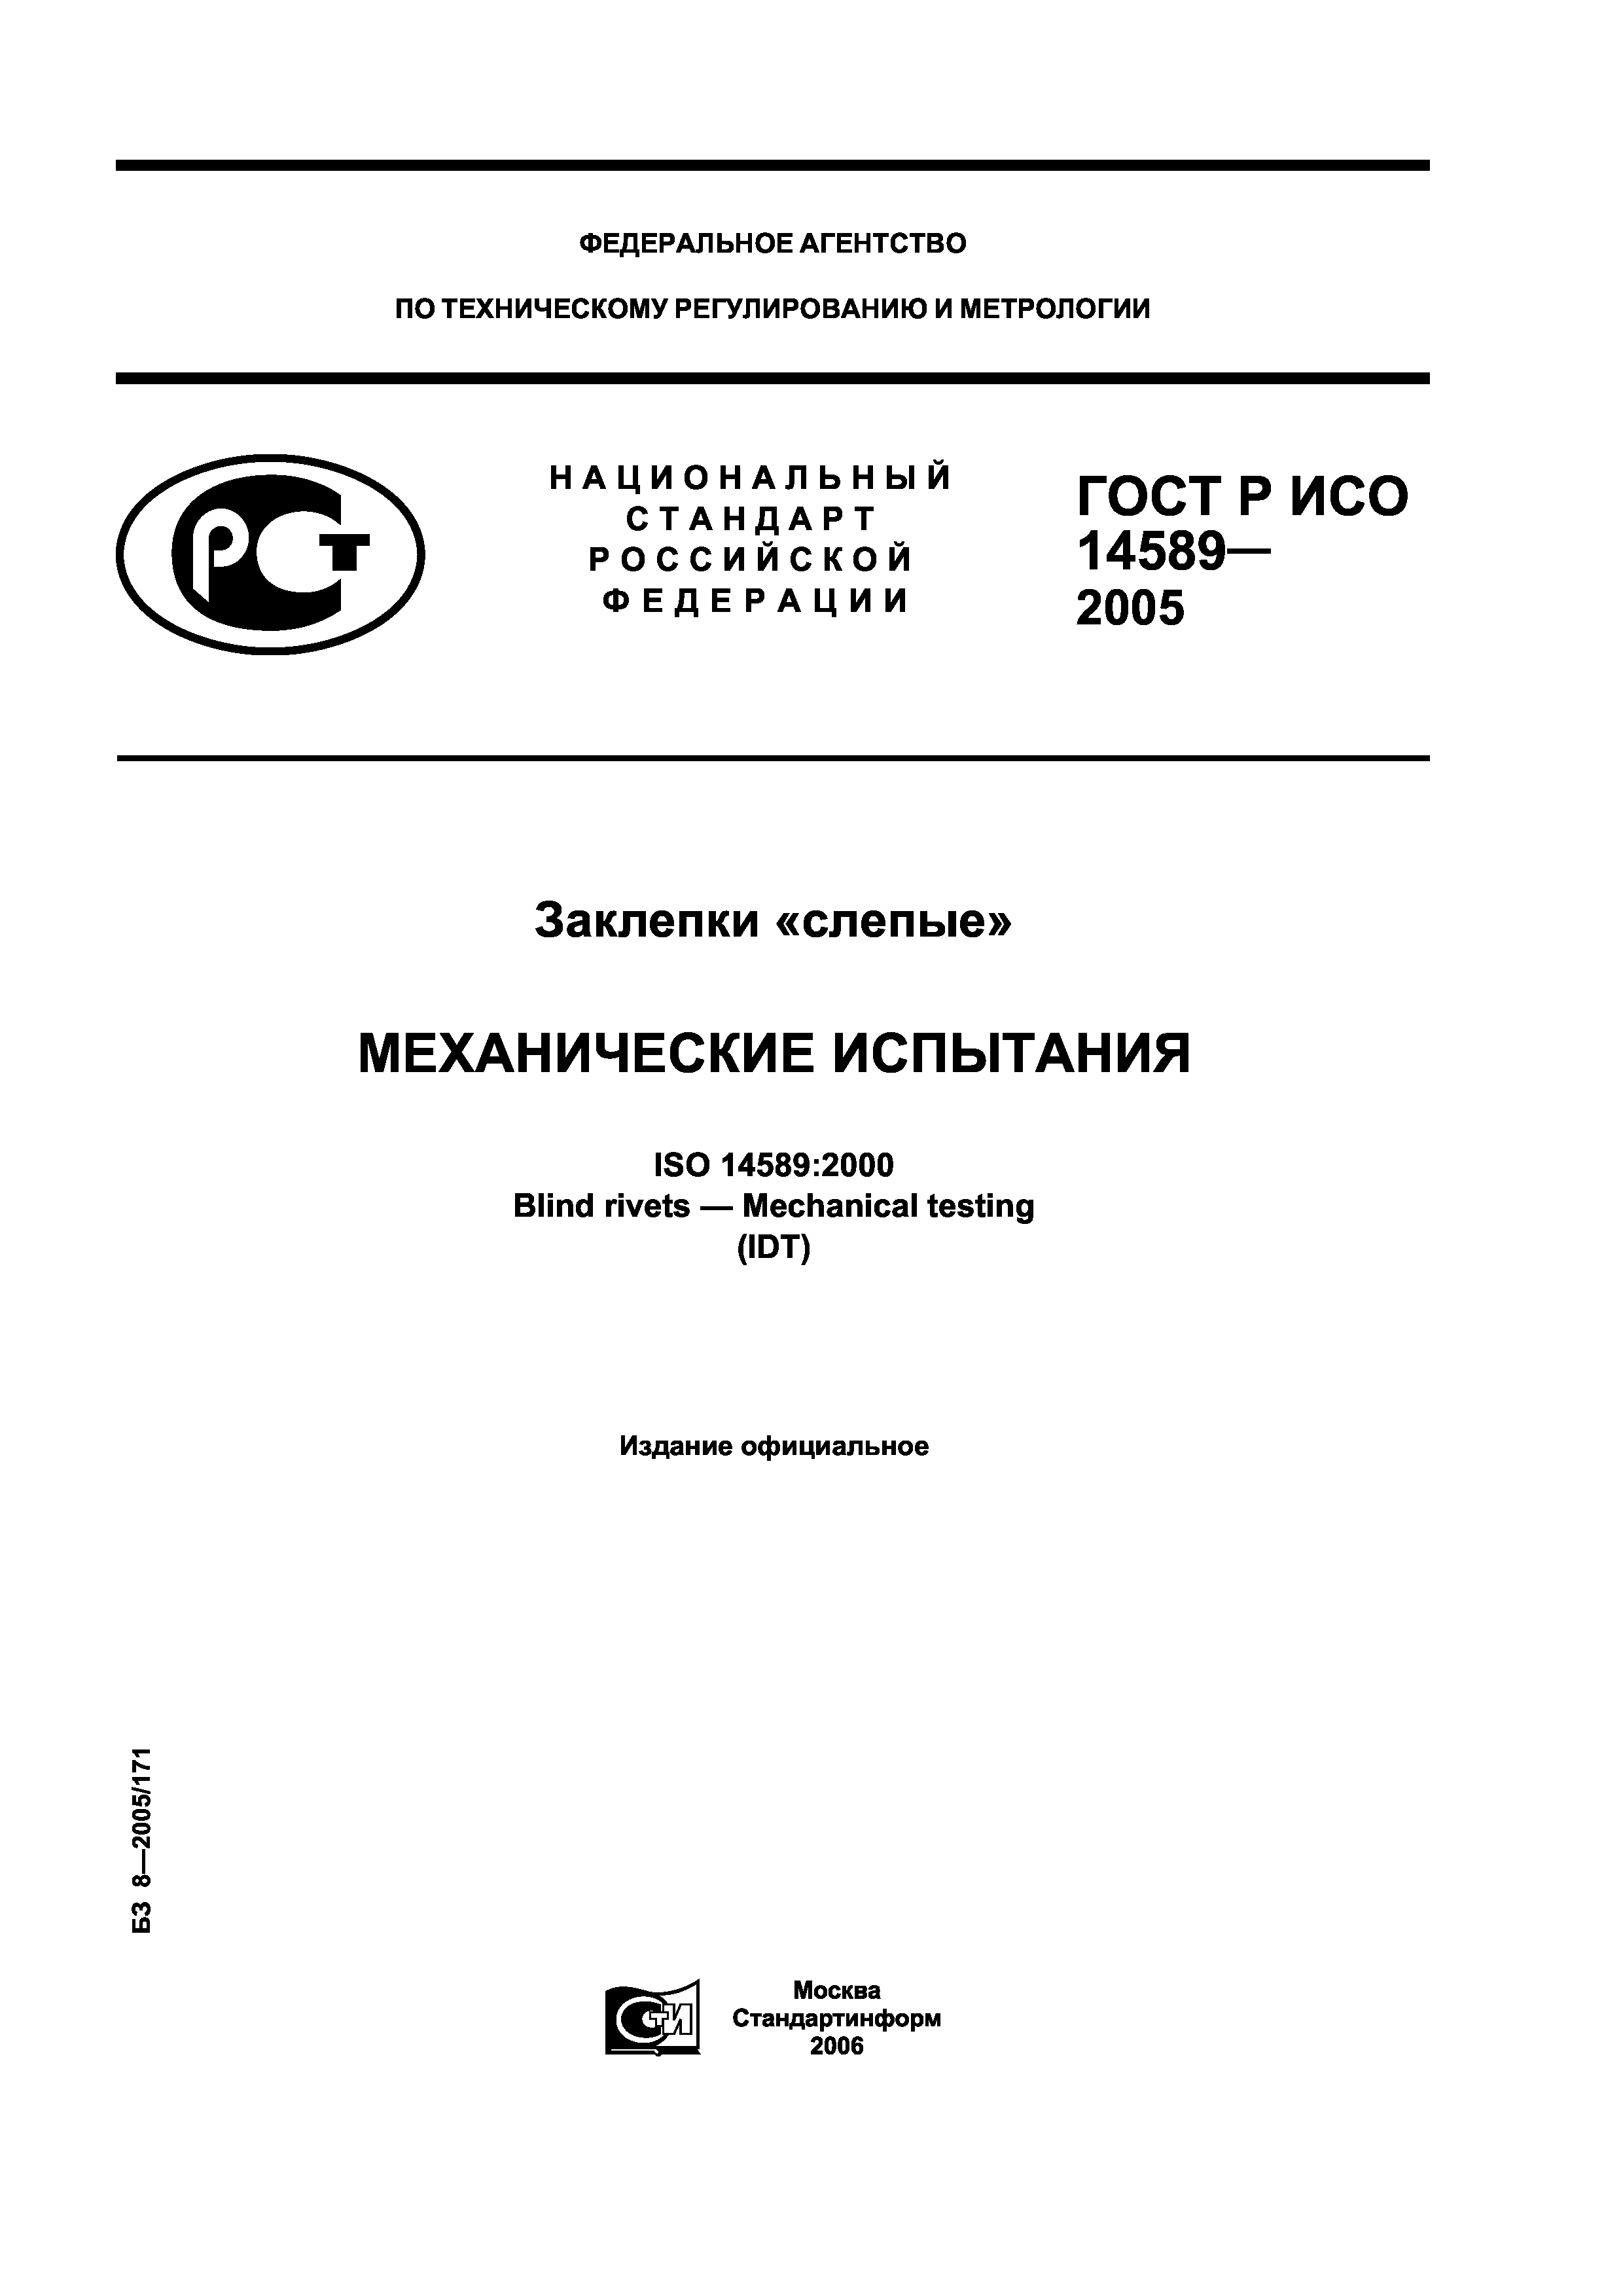 ГОСТ Р ИСО 14589-2005